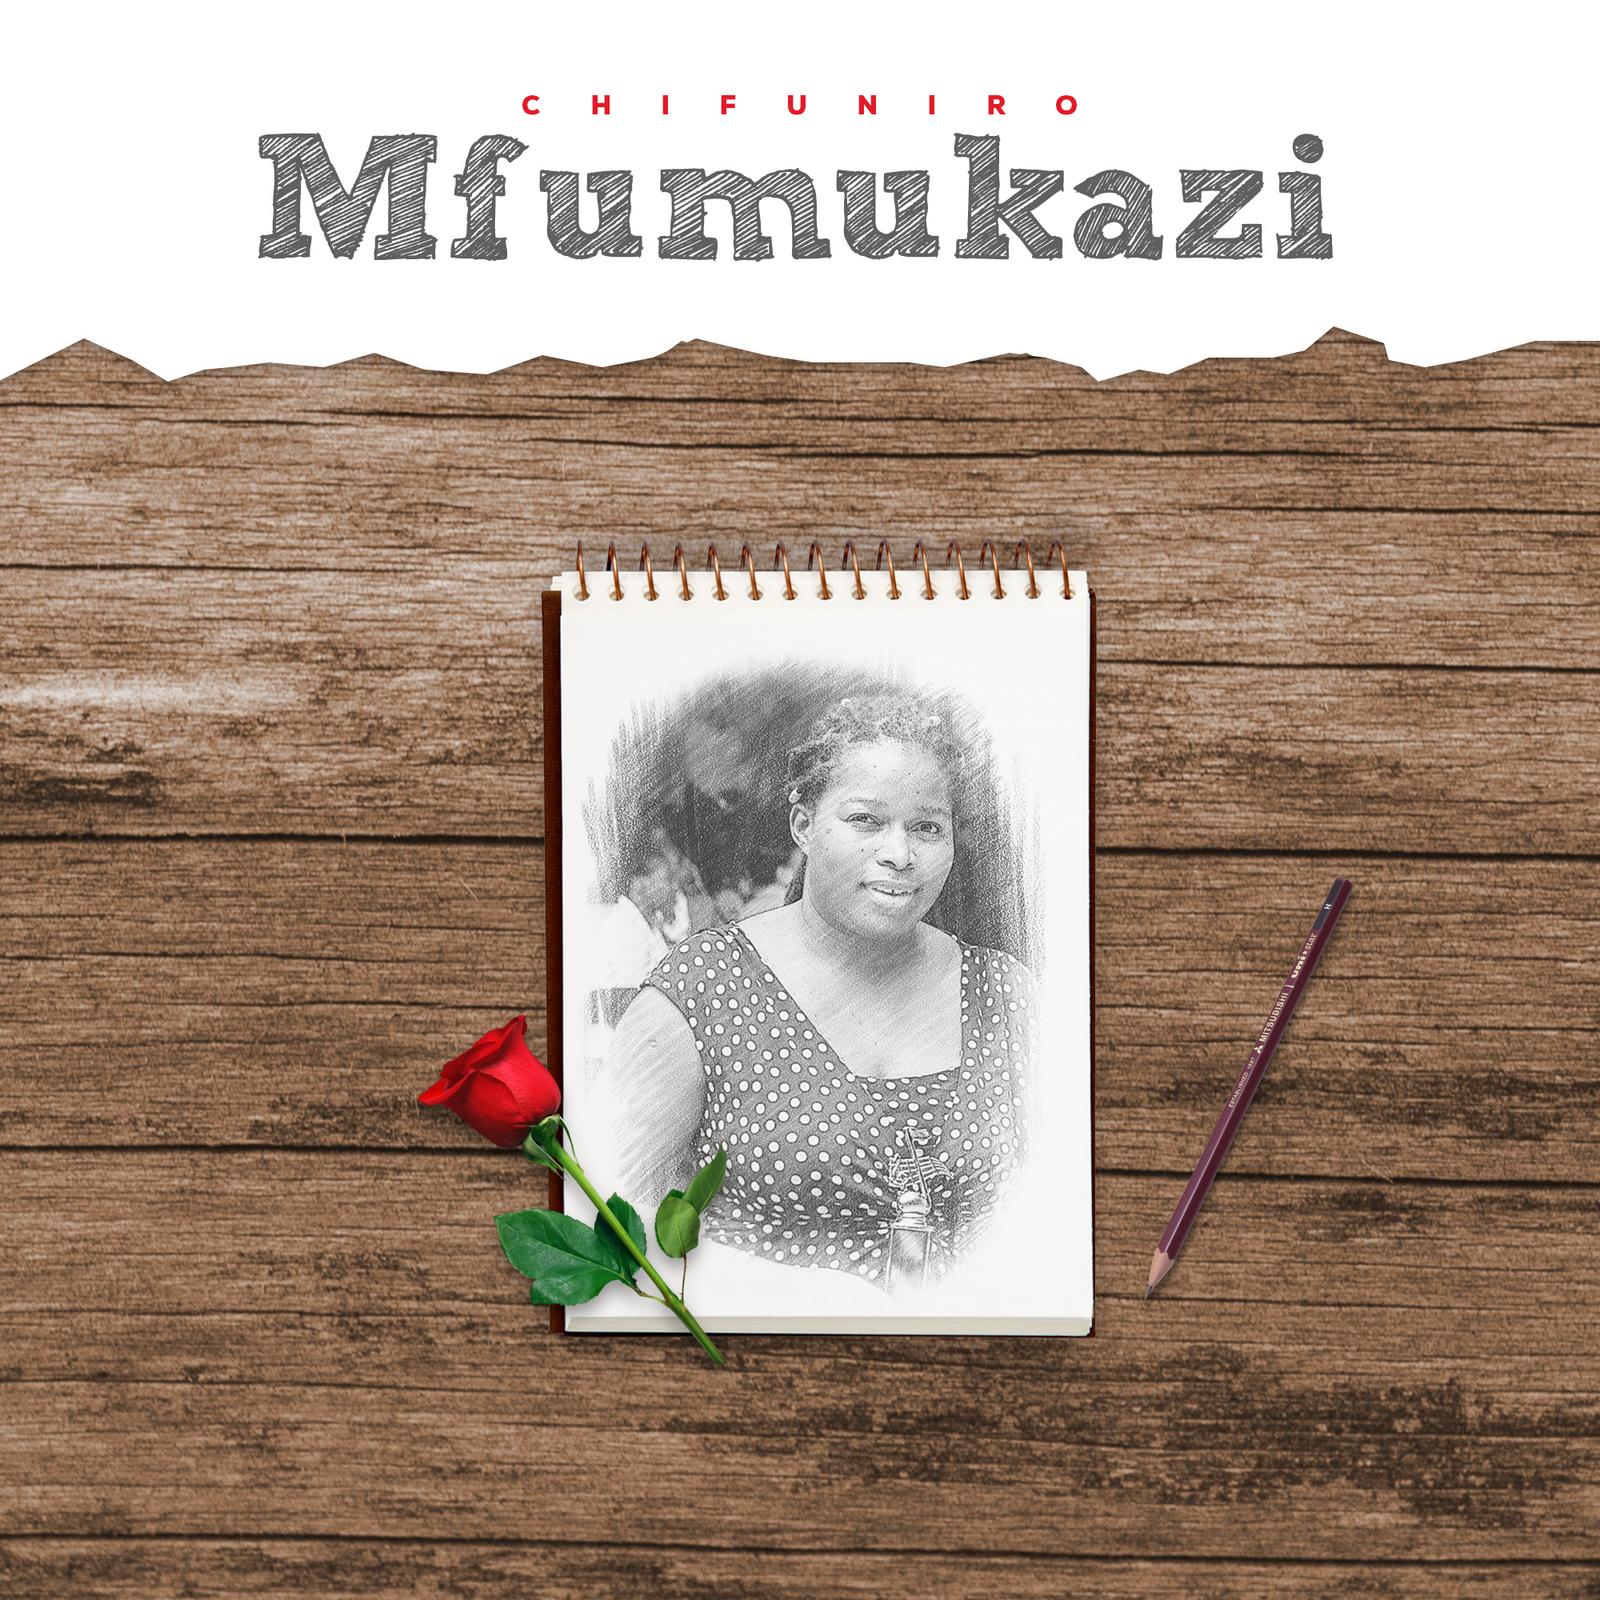  [Music Download]Chifuniro – Mfumukazi